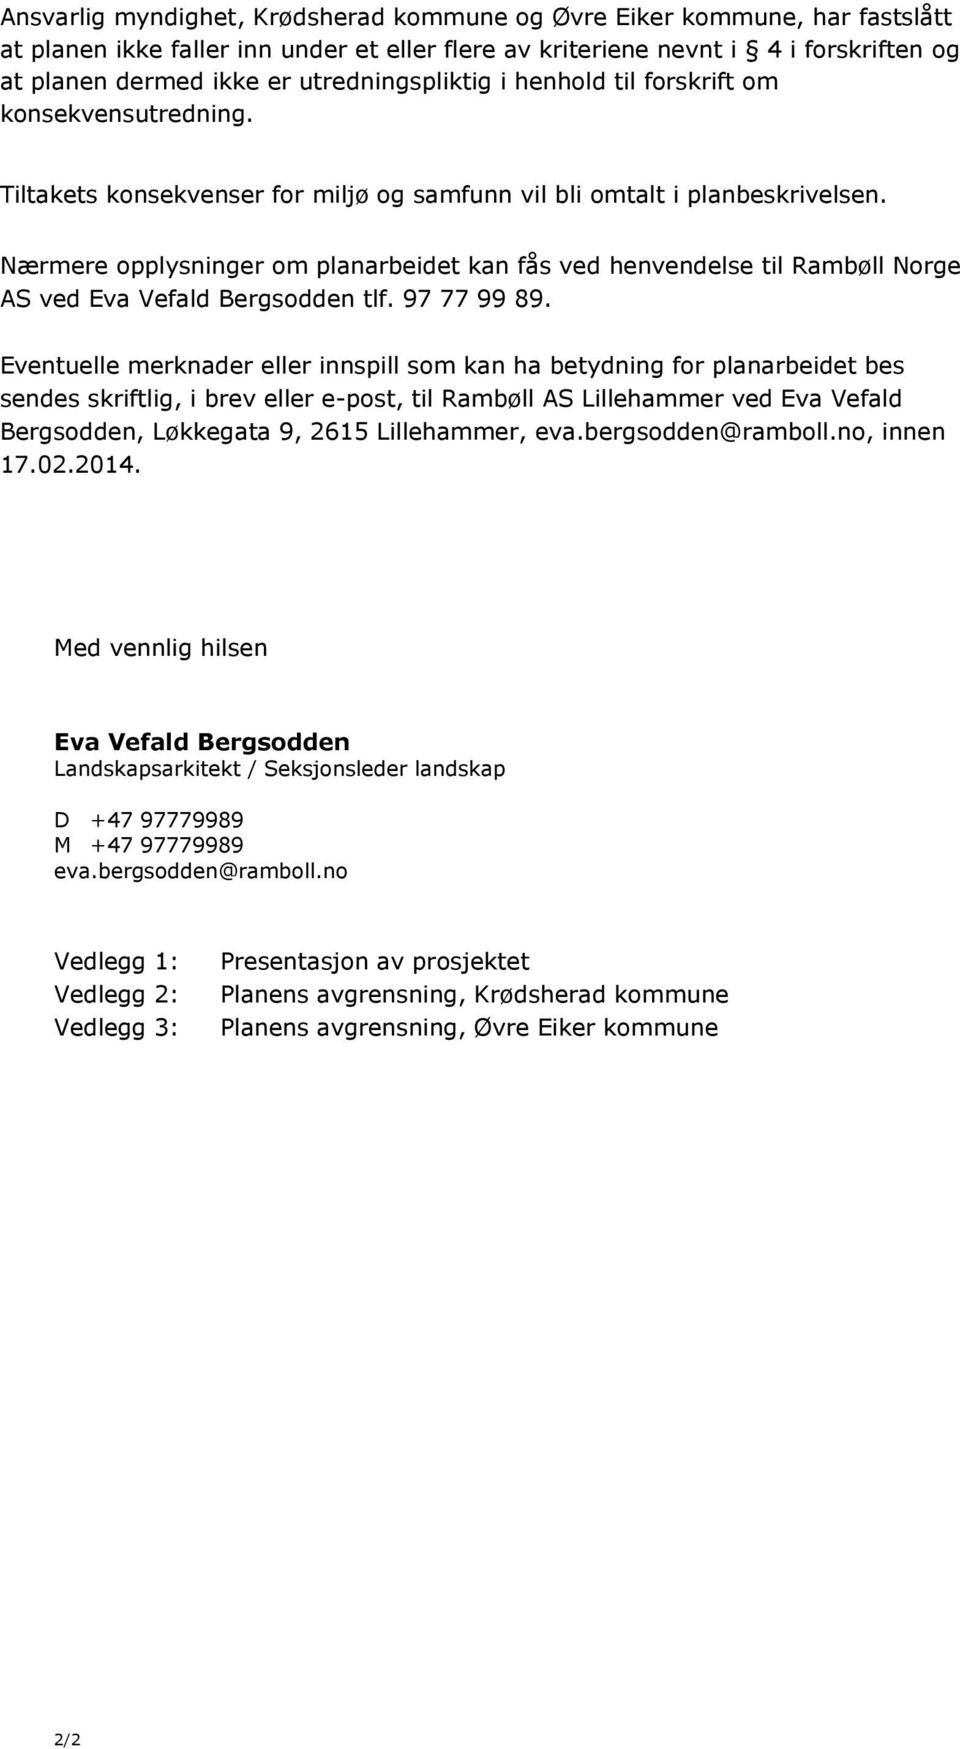 Nærmere opplysninger om planarbeidet kan fås ved henvendelse til Rambøll Norge AS ved Eva Vefald Bergsodden tlf. 97 77 99 89.